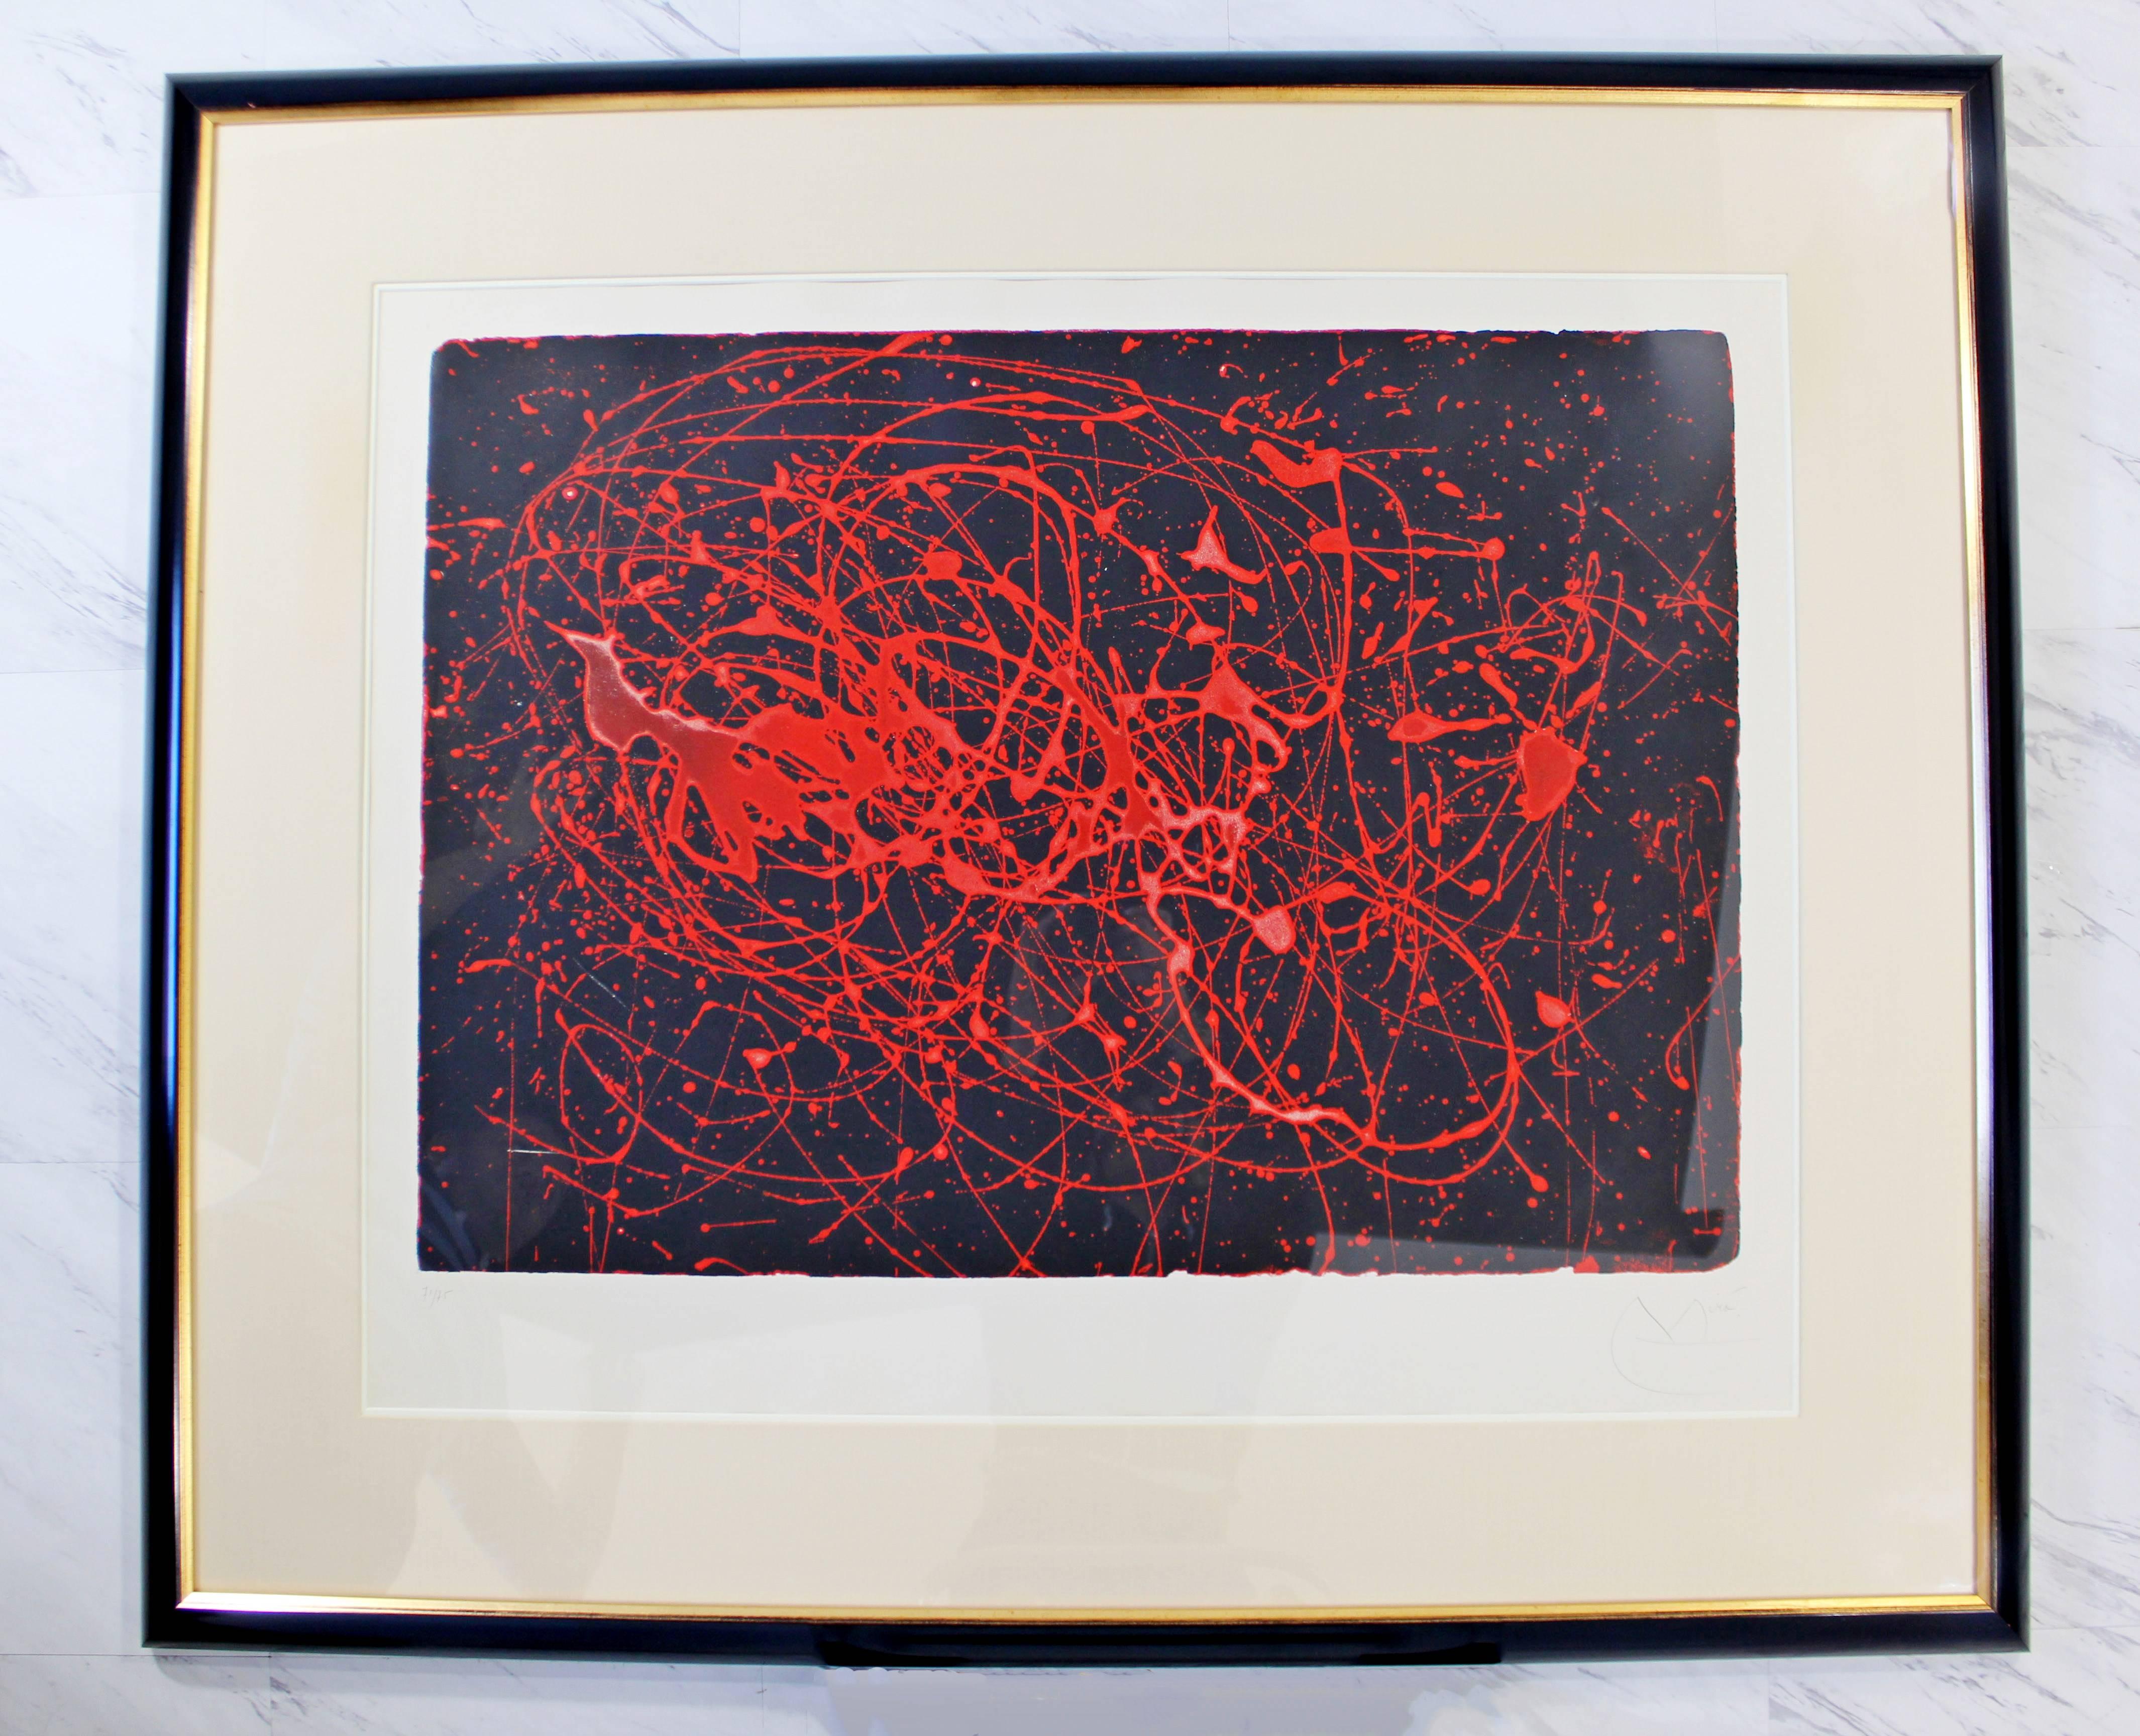 American Rare Signed Aquatint Etching L’Oiseau De Feu ‘Firebird’ by Joan Miro